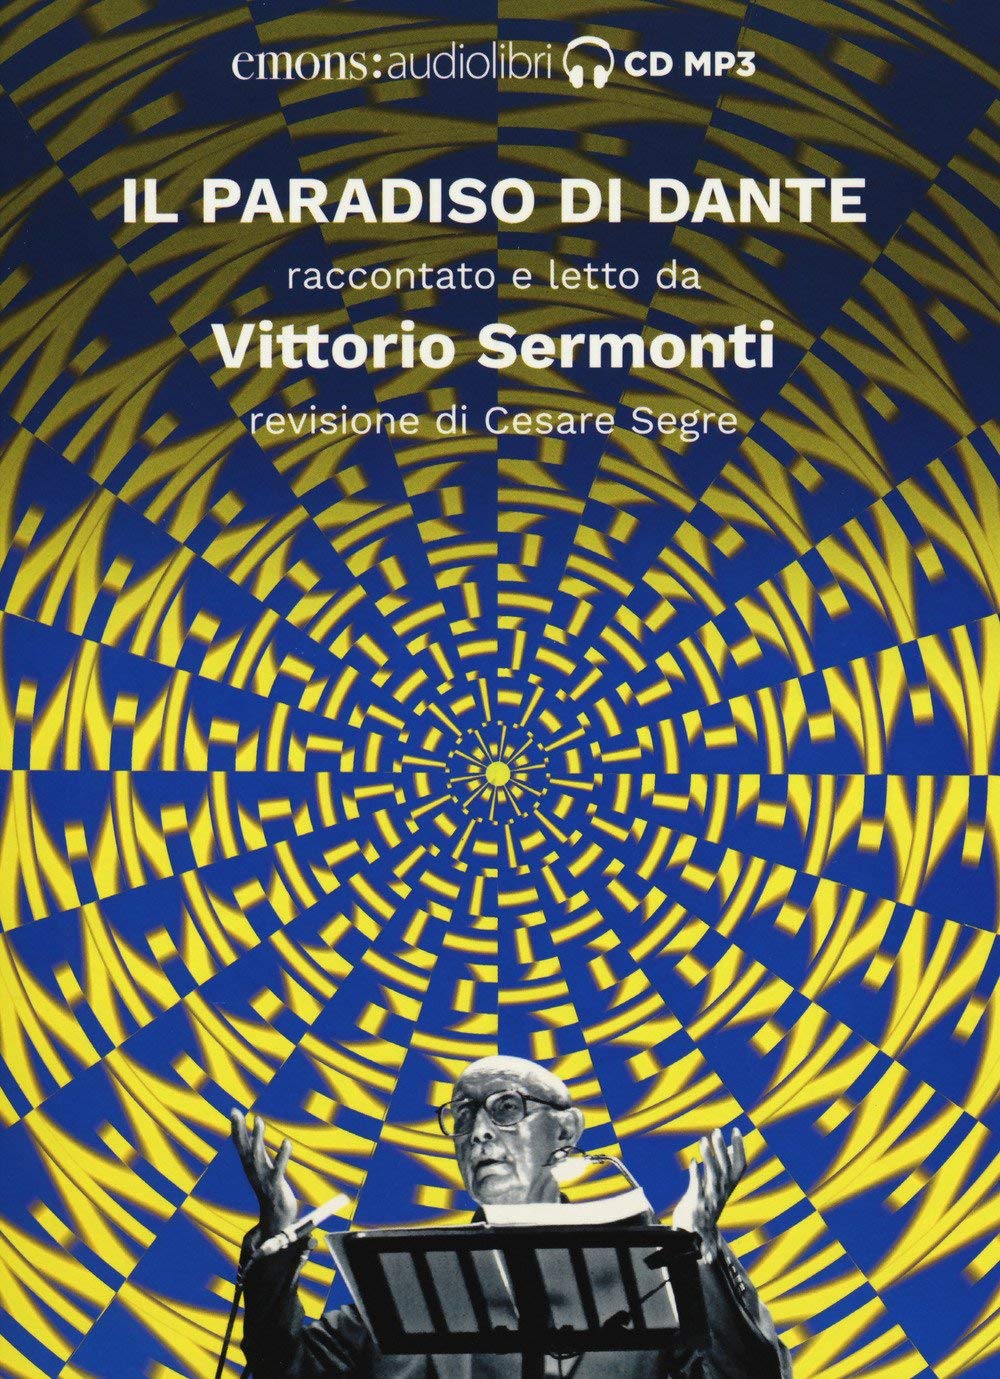 Audiolibro Vittorio Sermonti - Alighieri, Dante (Audiolibro) NUOVO SIGILLATO, EDIZIONE DEL 05/07/2018 SUBITO DISPONIBILE